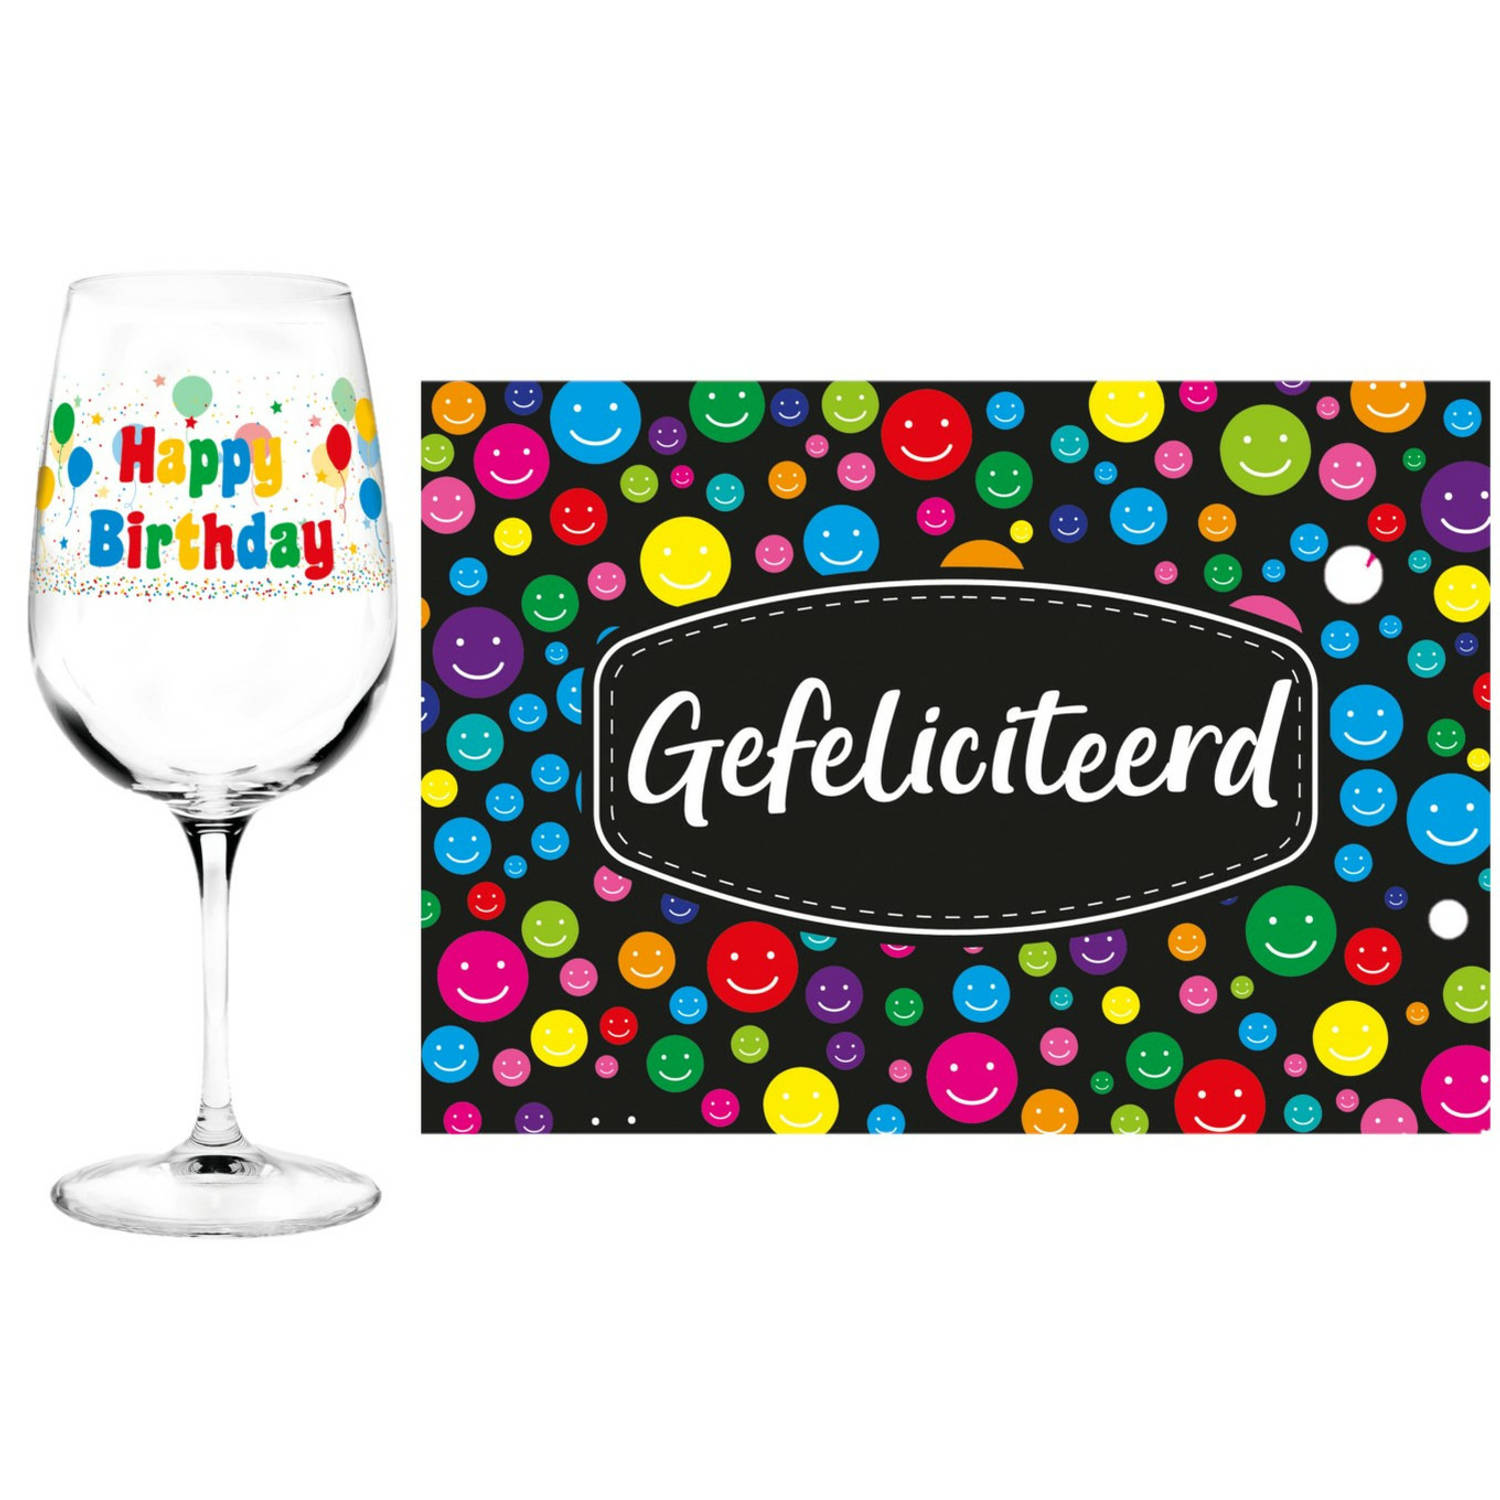 Happy Birthday cadeau glas 30 jaar verjaardag en Gefeliciteerd kaart feest glas wijn